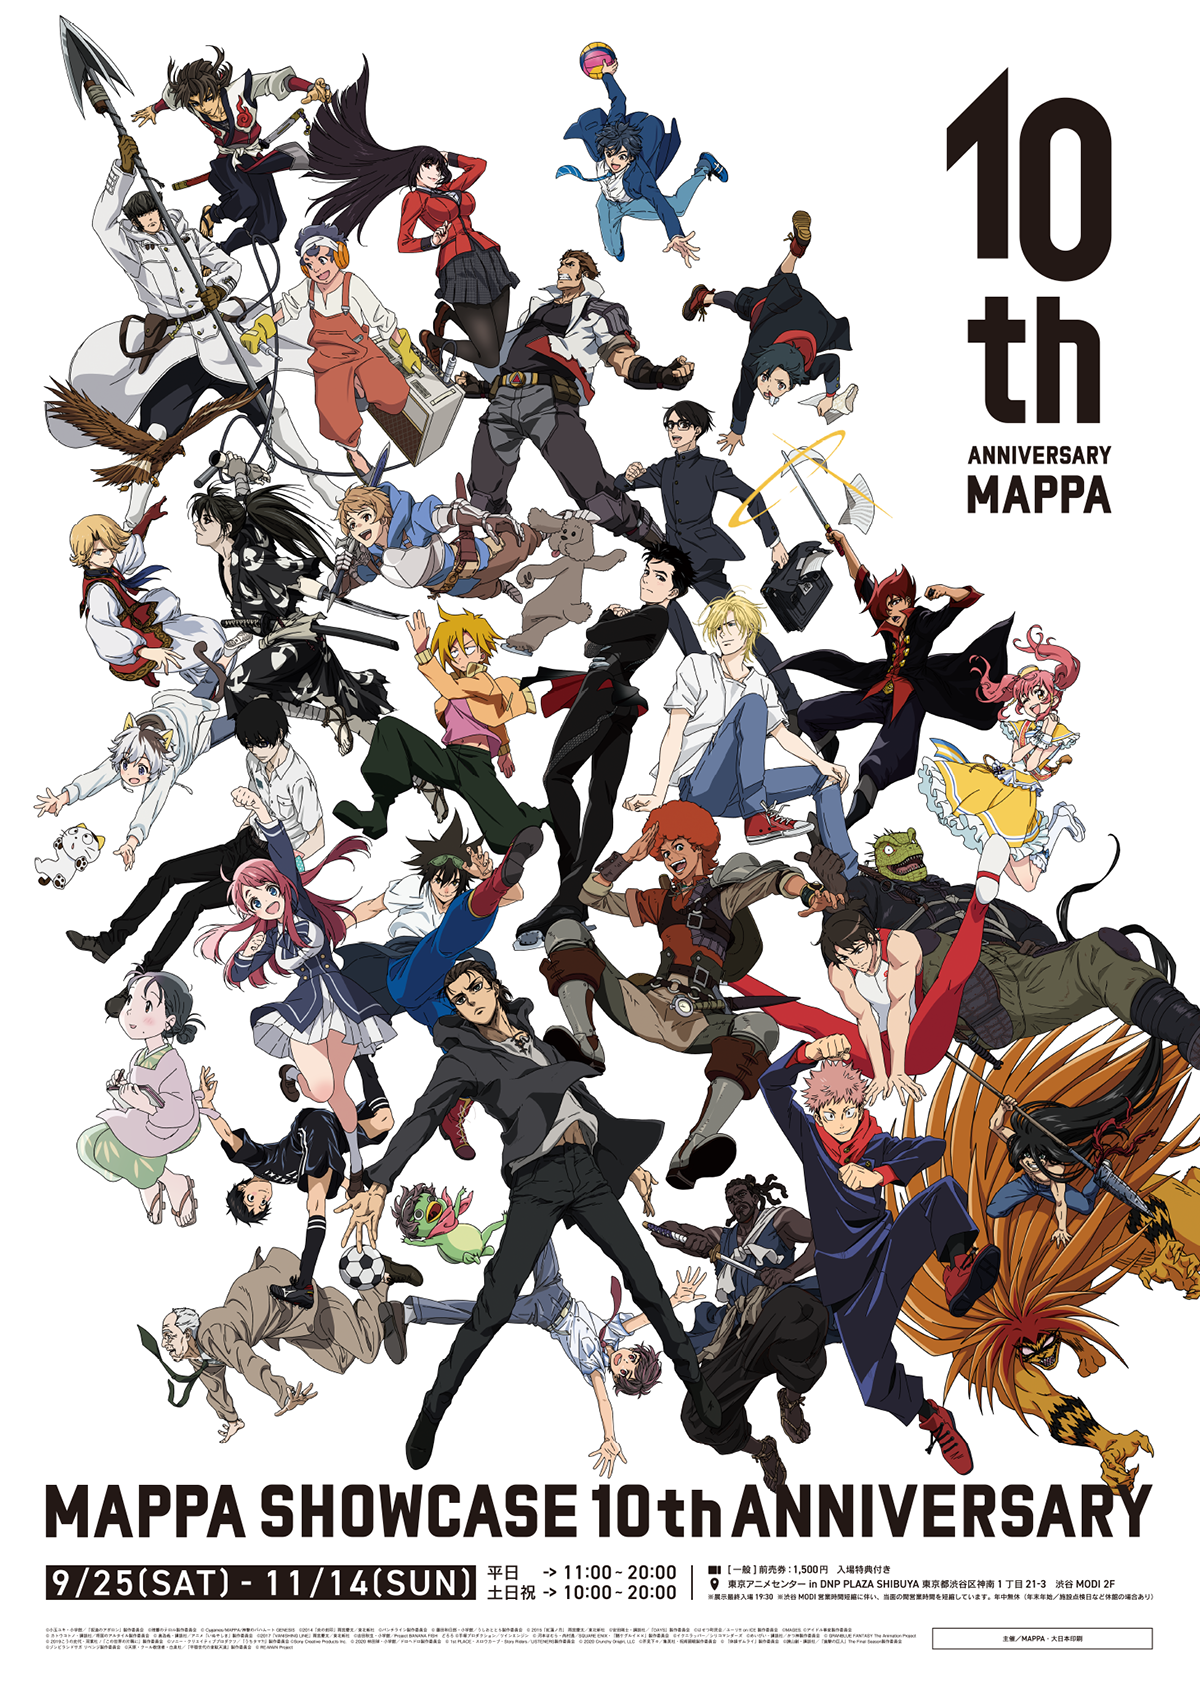 MAPPA's 10th Anniversary Showcase exhibition